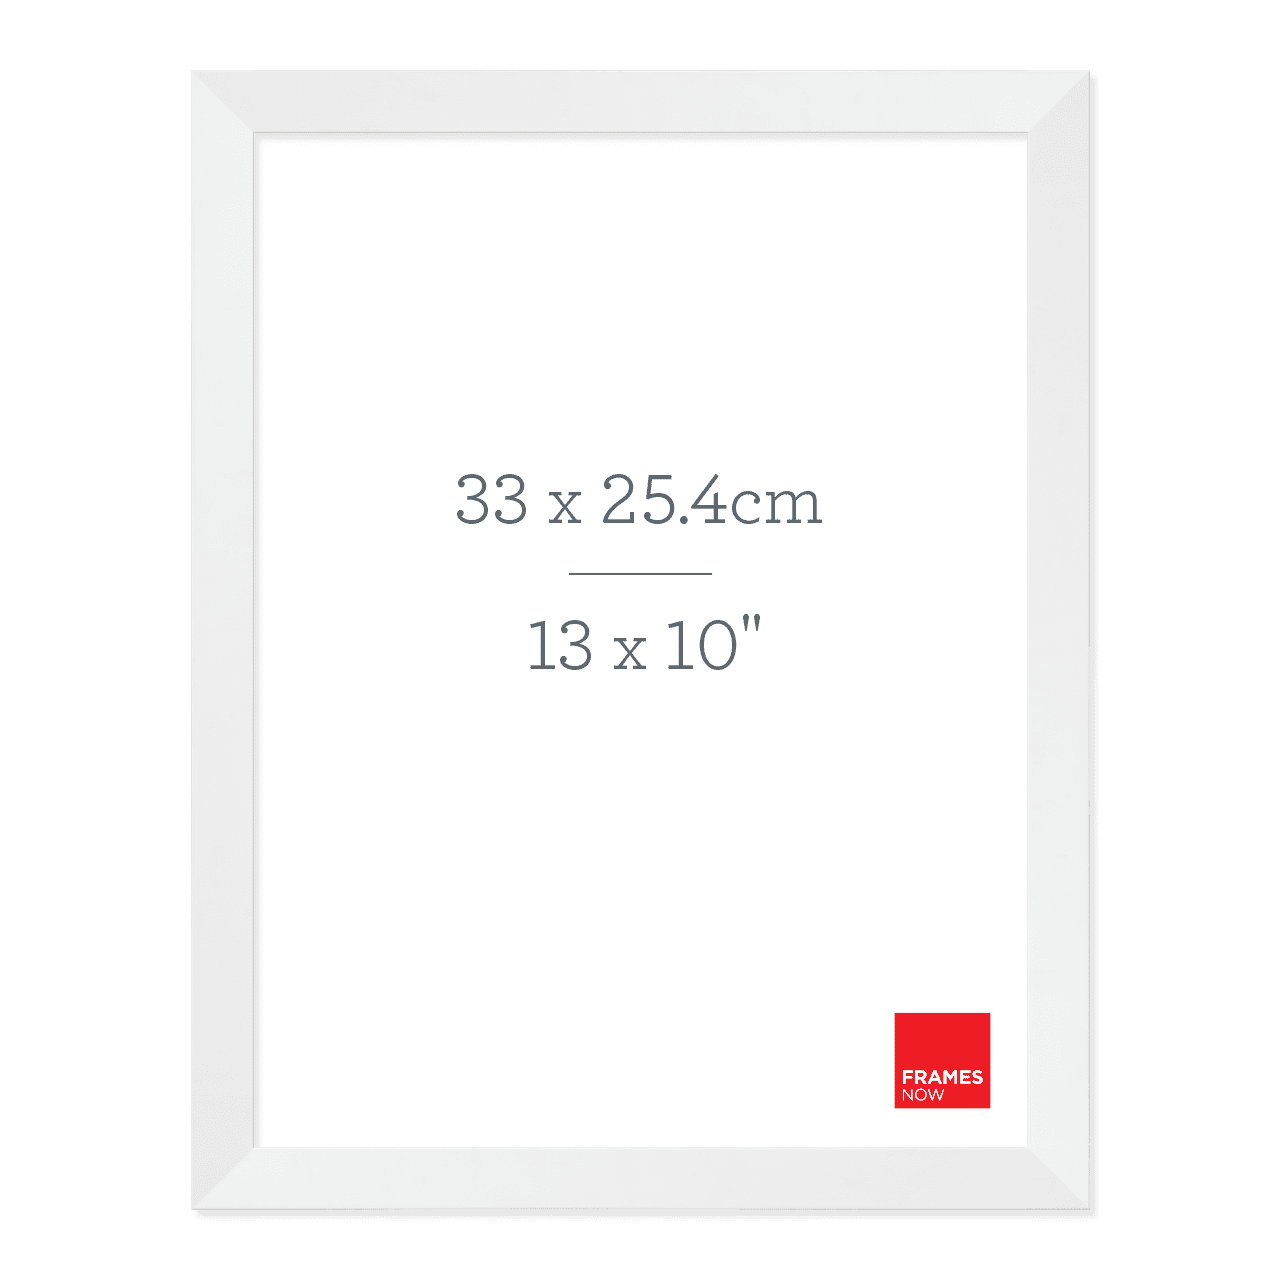 Premium Matte White Box Picture Frame For 33 x 25.4 cm Artwork